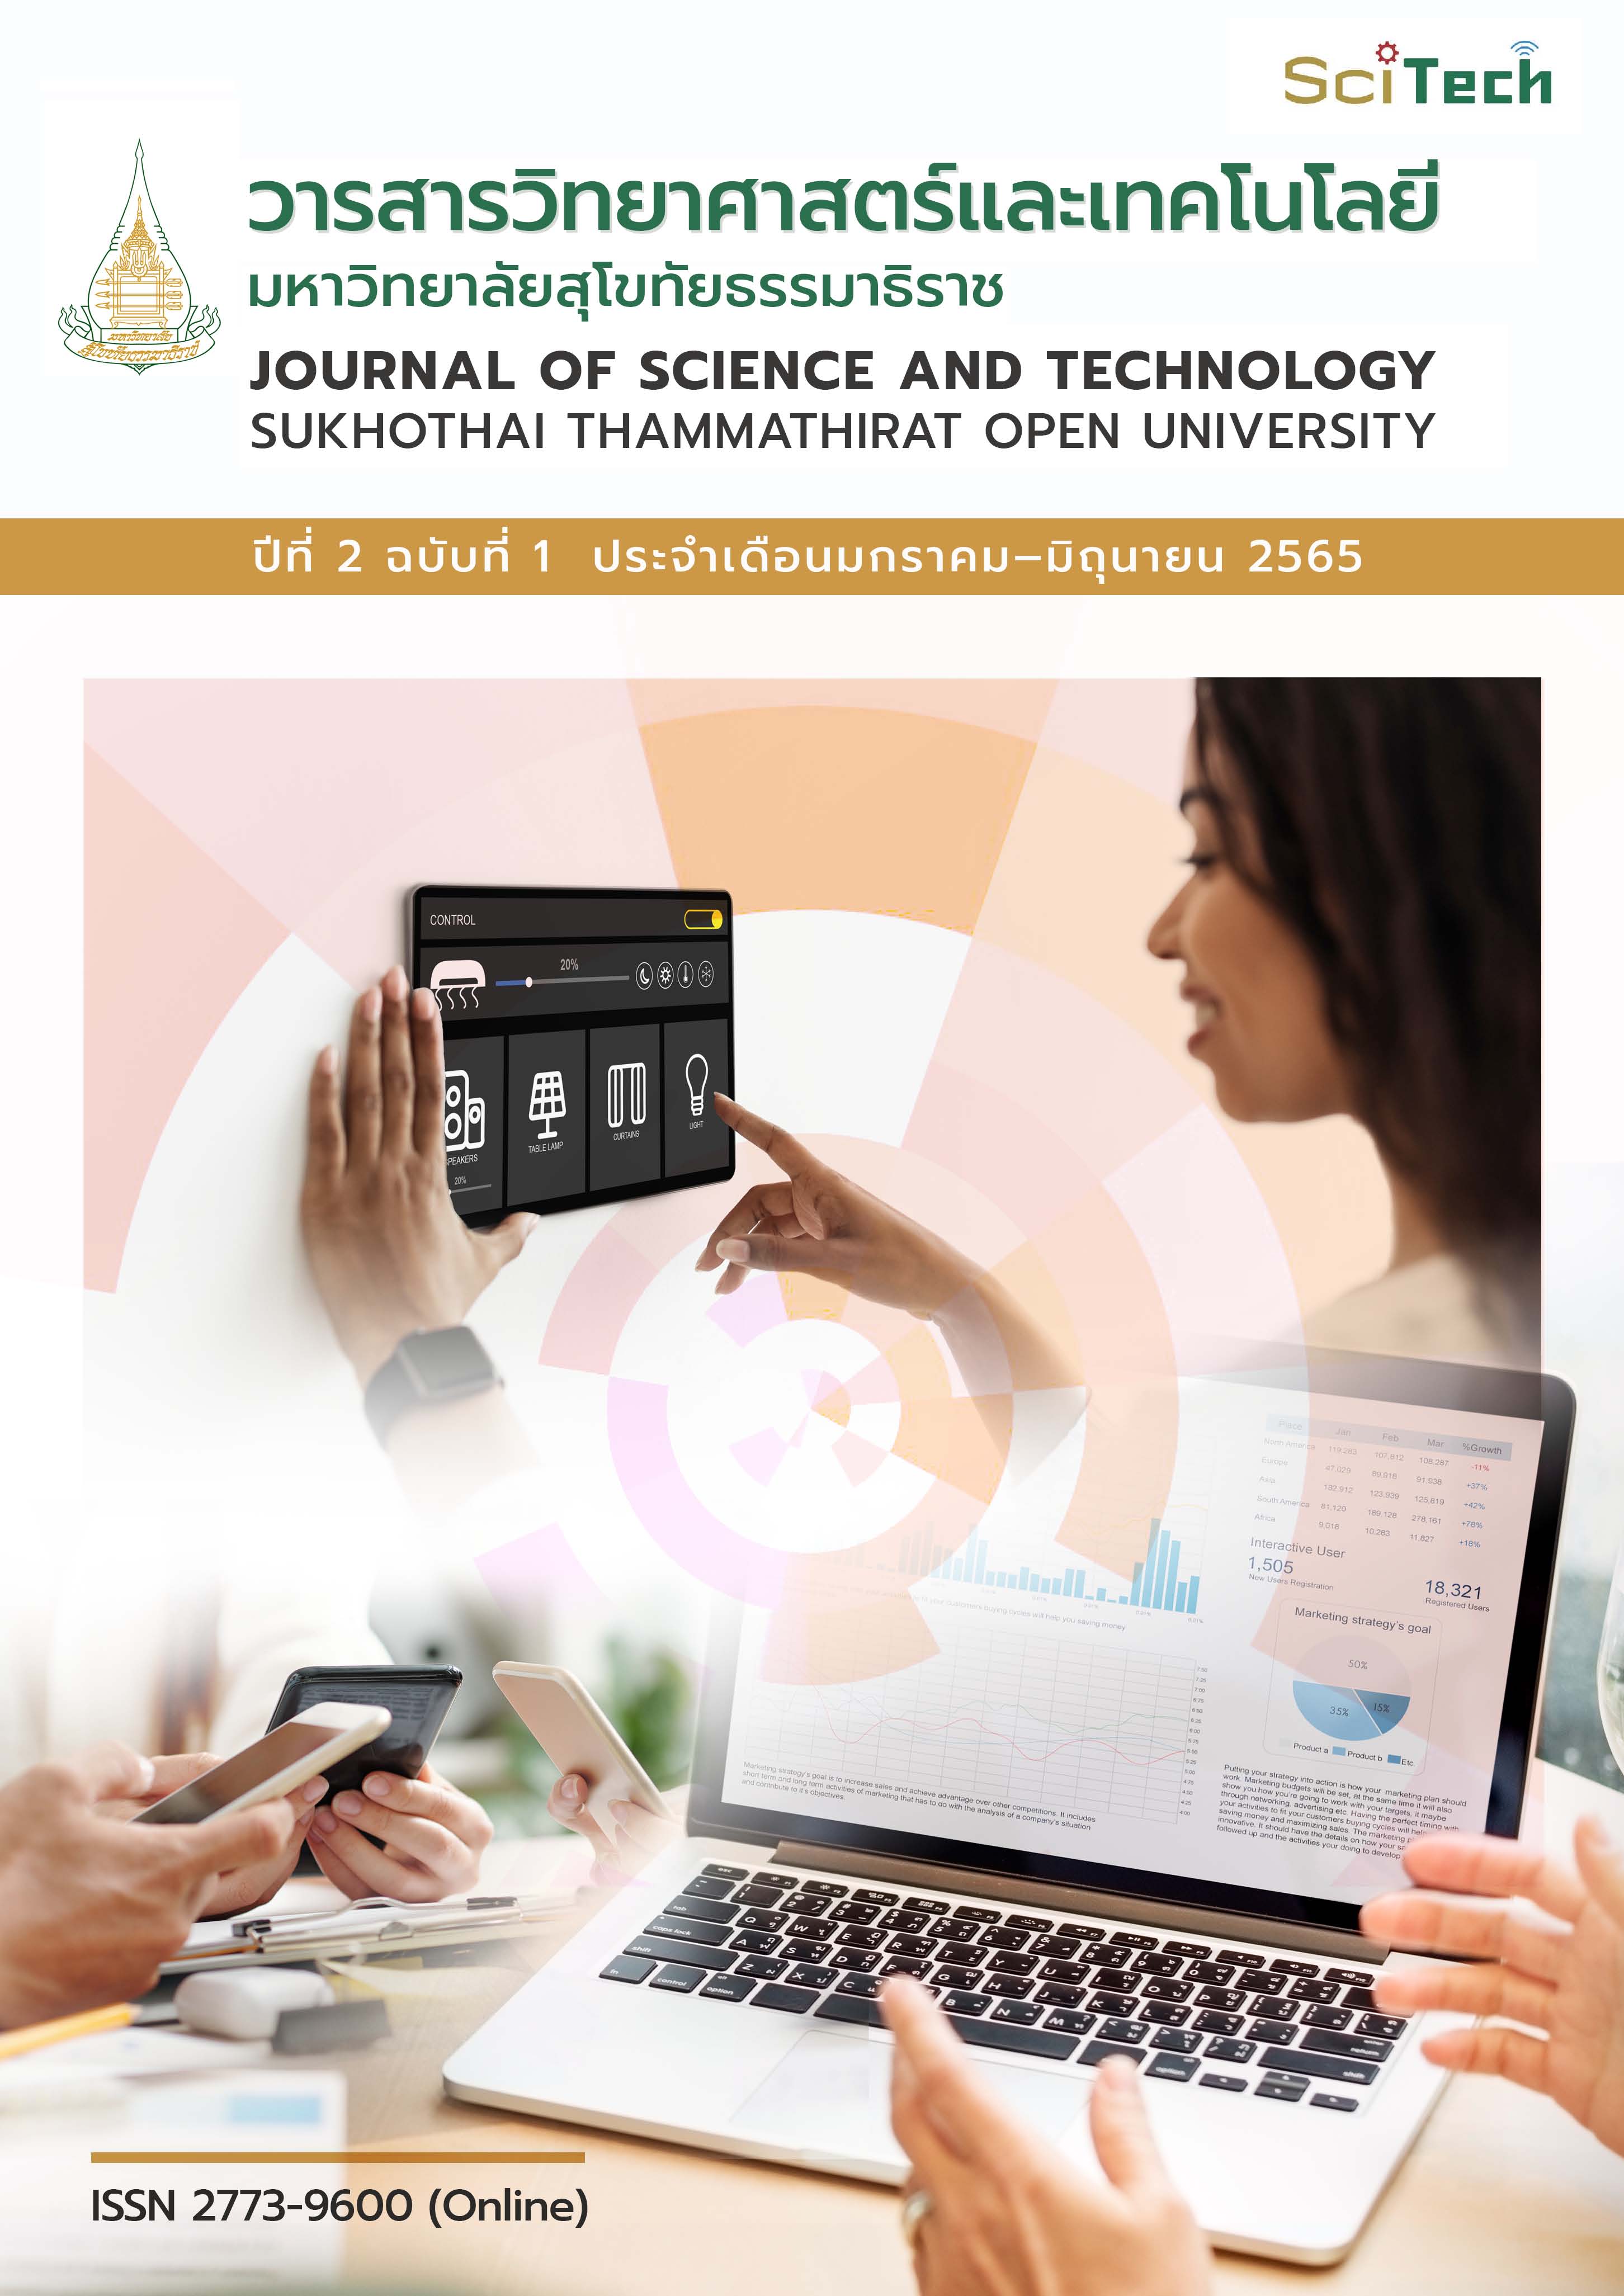 					ดู ปีที่ 2 ฉบับที่ 1 (2565): วารสารวิทยาศาสตร์และเทคโนโลยี มหาวิทยาลัยสุโขทัยธรรมาธิราช ปีที่ 2 ฉบับที่ 1 (มกราคม – มิถุนายน)
				